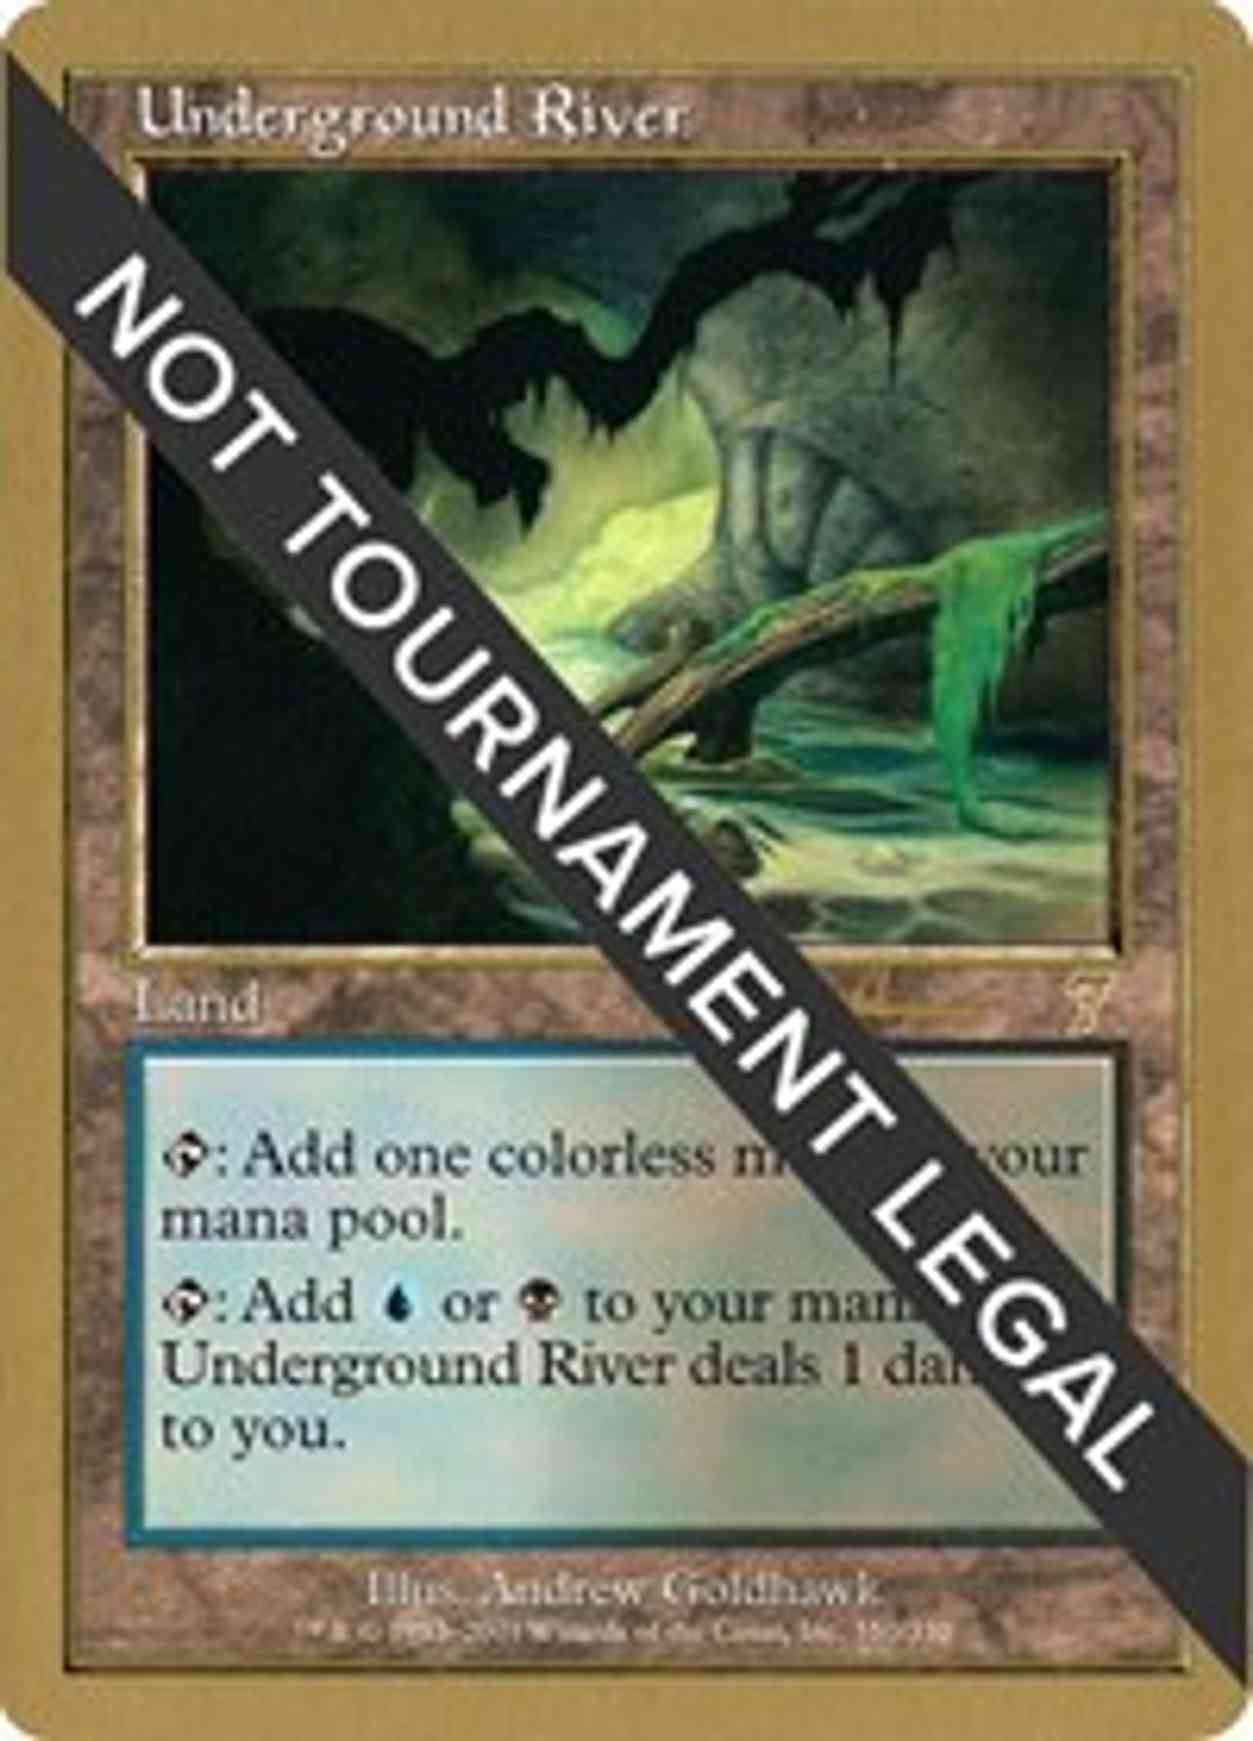 Underground River - 2001 Antoine Ruel (7ED) magic card front